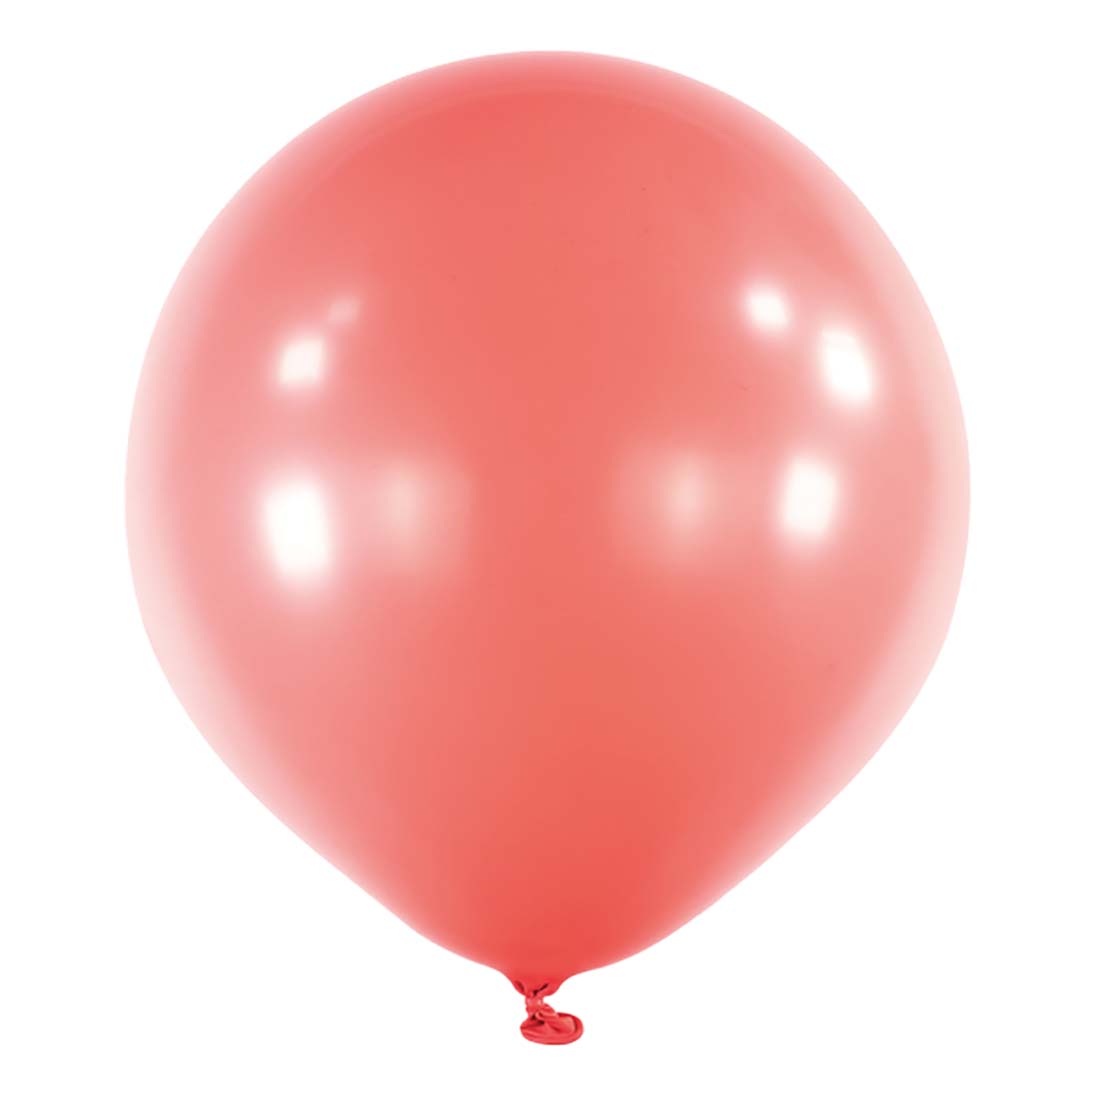 Strawberry Macaron Balloon 24in 4pcs